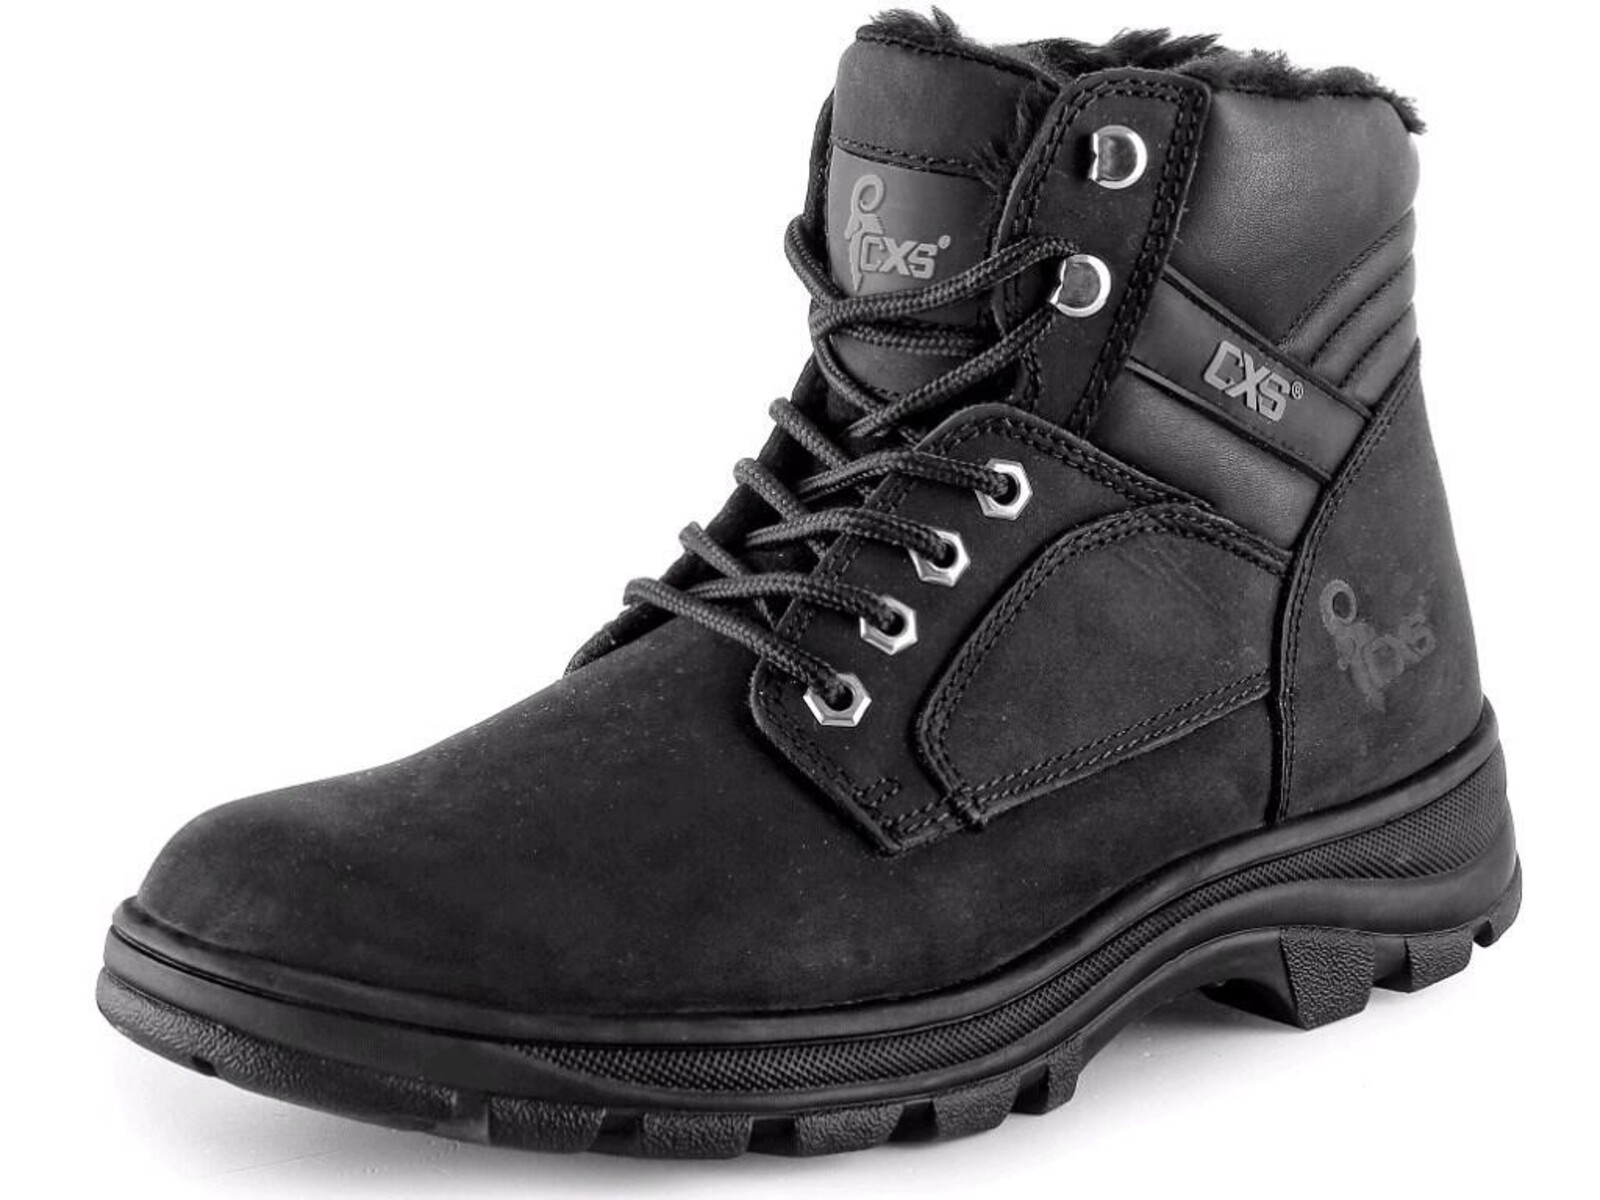 Zimná členková obuv CXS Road Industry FO E CI SRA - veľkosť: 41, farba: čierna